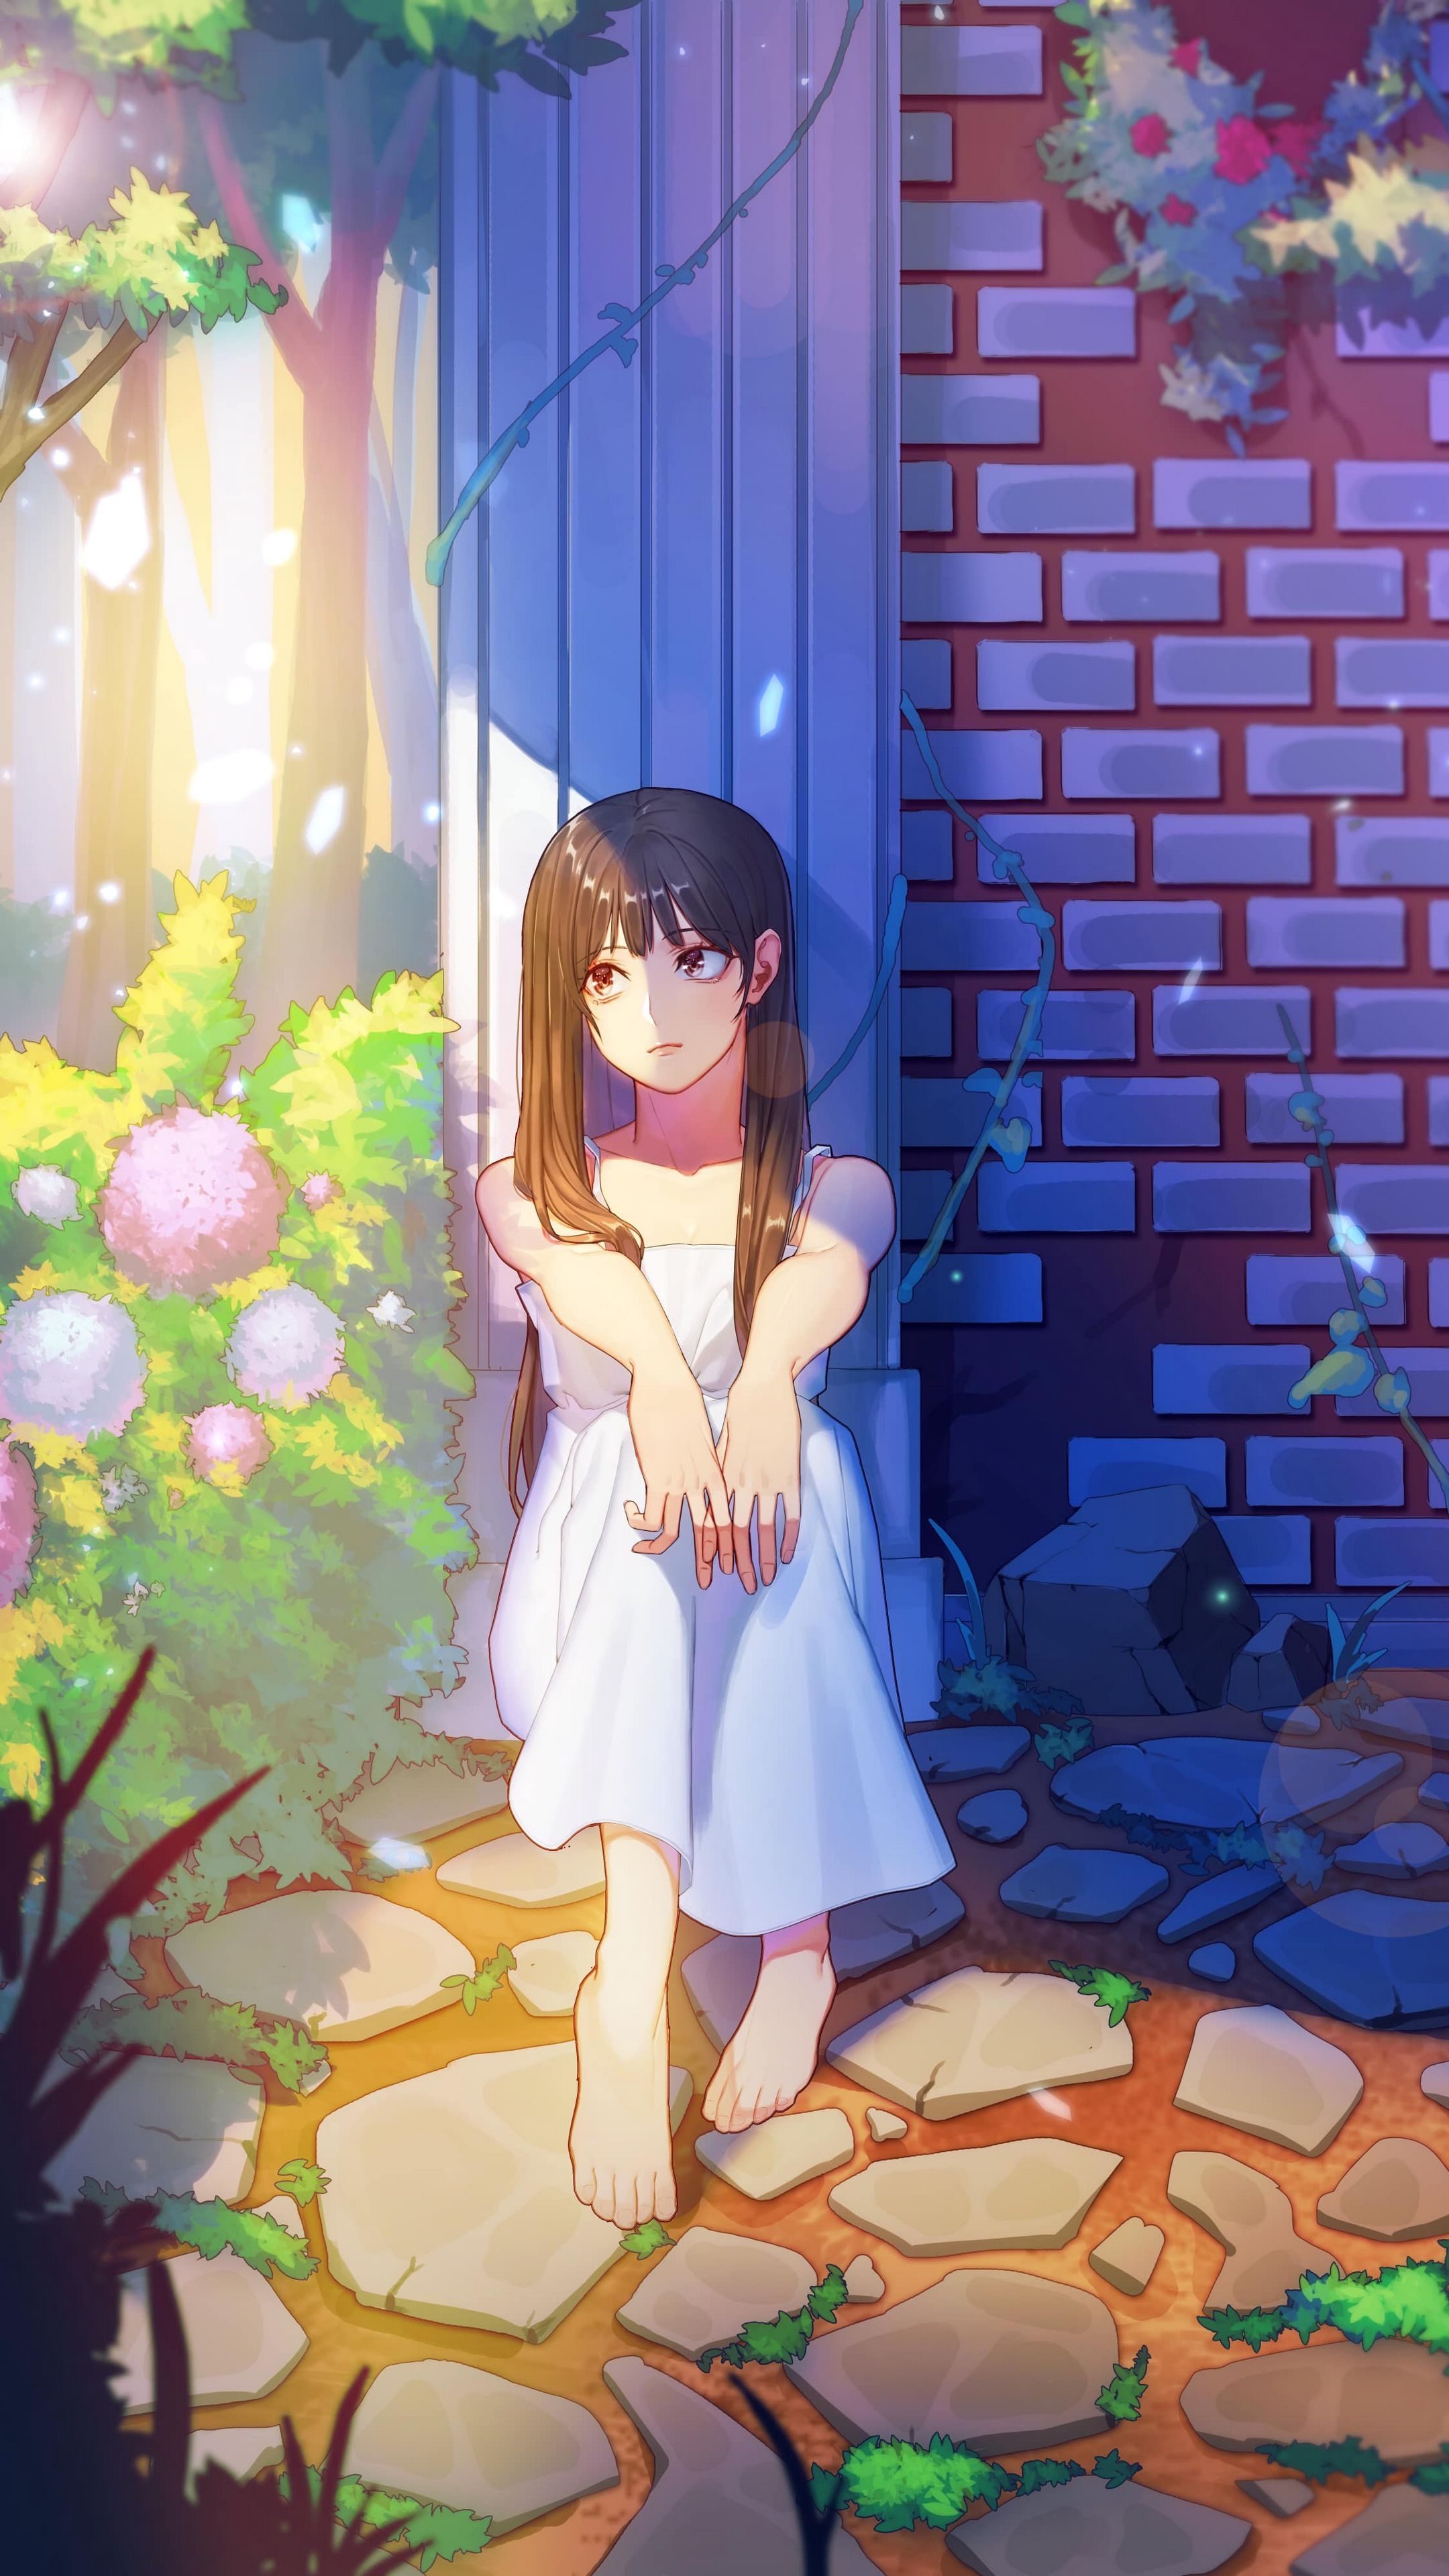 Hình nền Anime về cô gái buồn làm chúng ta đắm mình vào một thế giới cô đơn và thật đáng yêu. Cảm xúc của nhân vật được gửi thông qua hình ảnh và màu sắc sẽ khiến bạn nhận được đường truyền tuyệt vời từ nhân vật chính. Hãy kiểm tra để khám phá thử thách mới này.